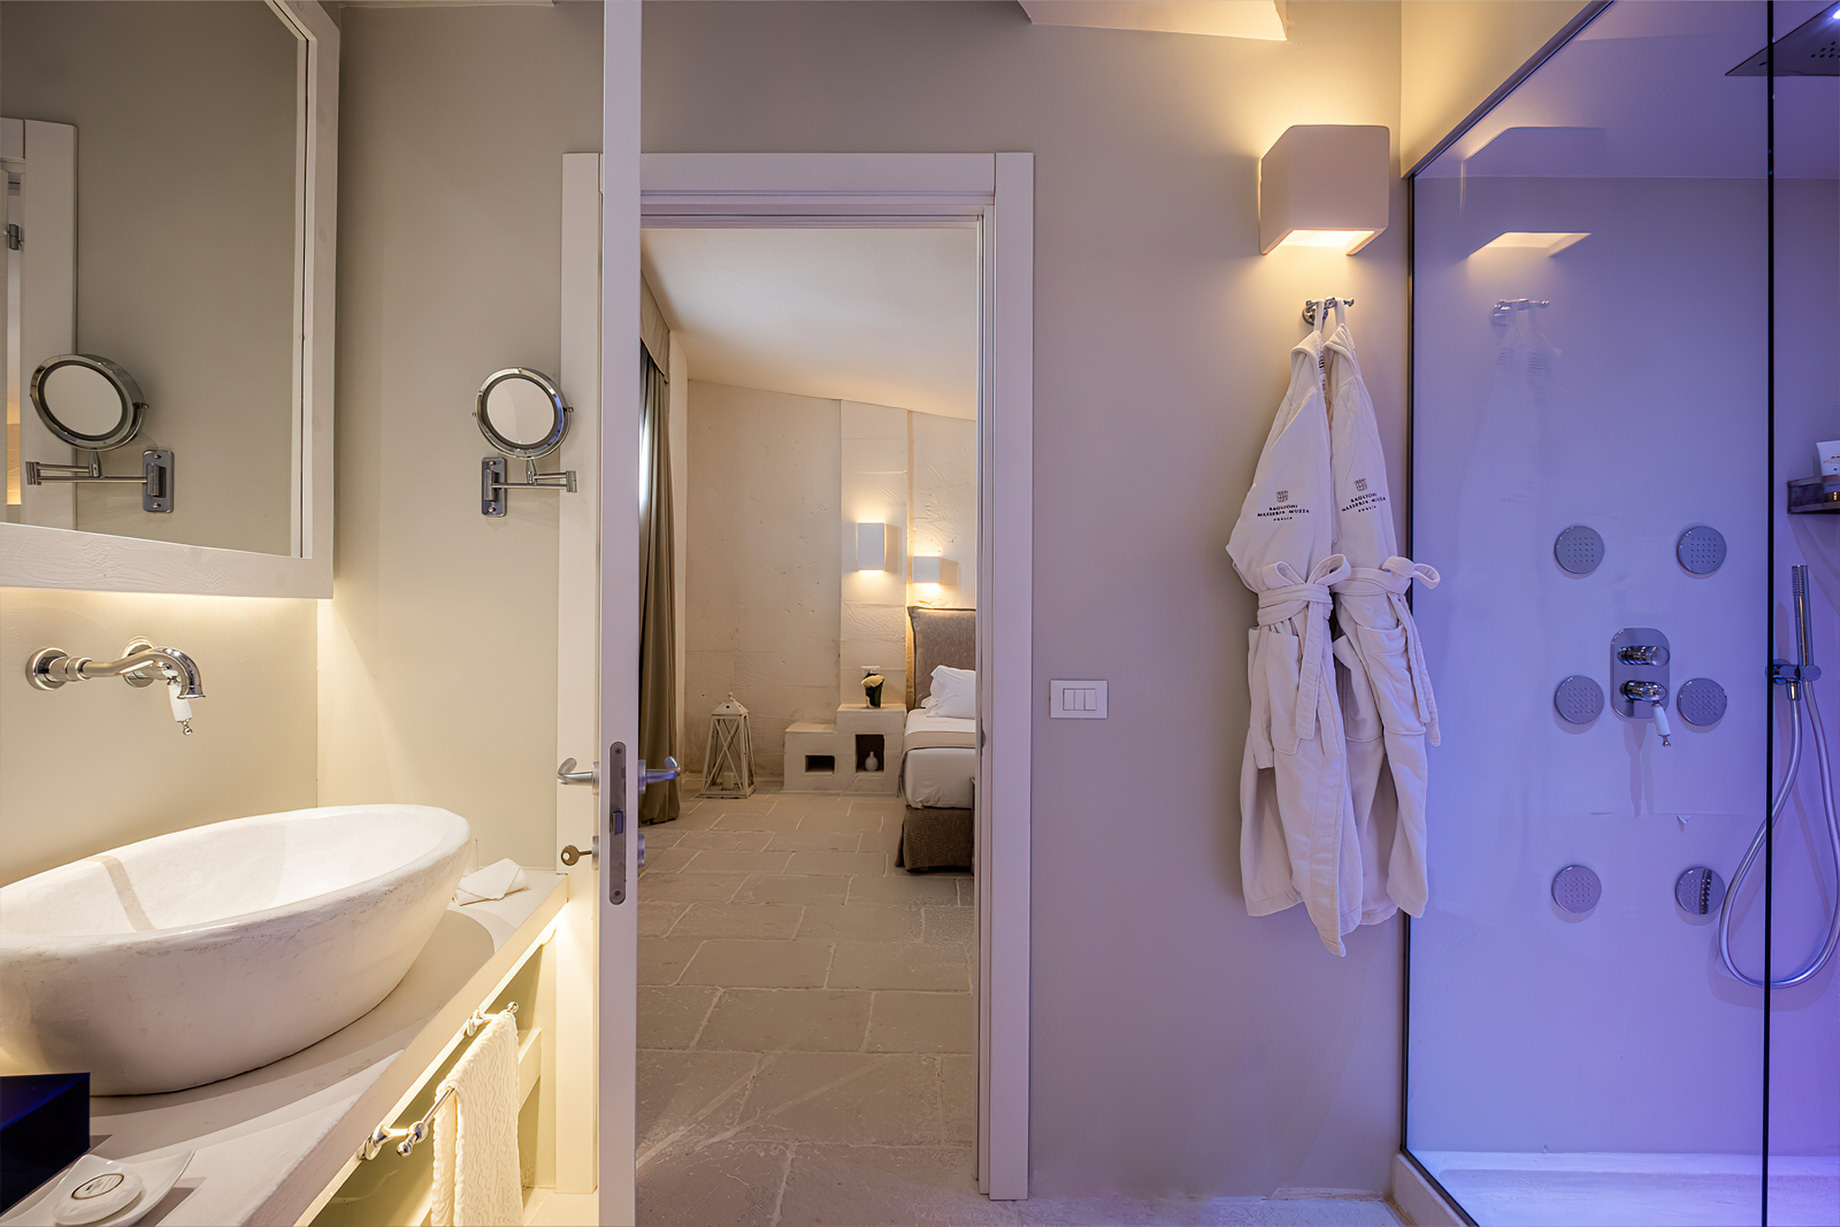 Baglioni Masseria Muzza Hotel - Puglia, Italy - Executive Suite Bathroom